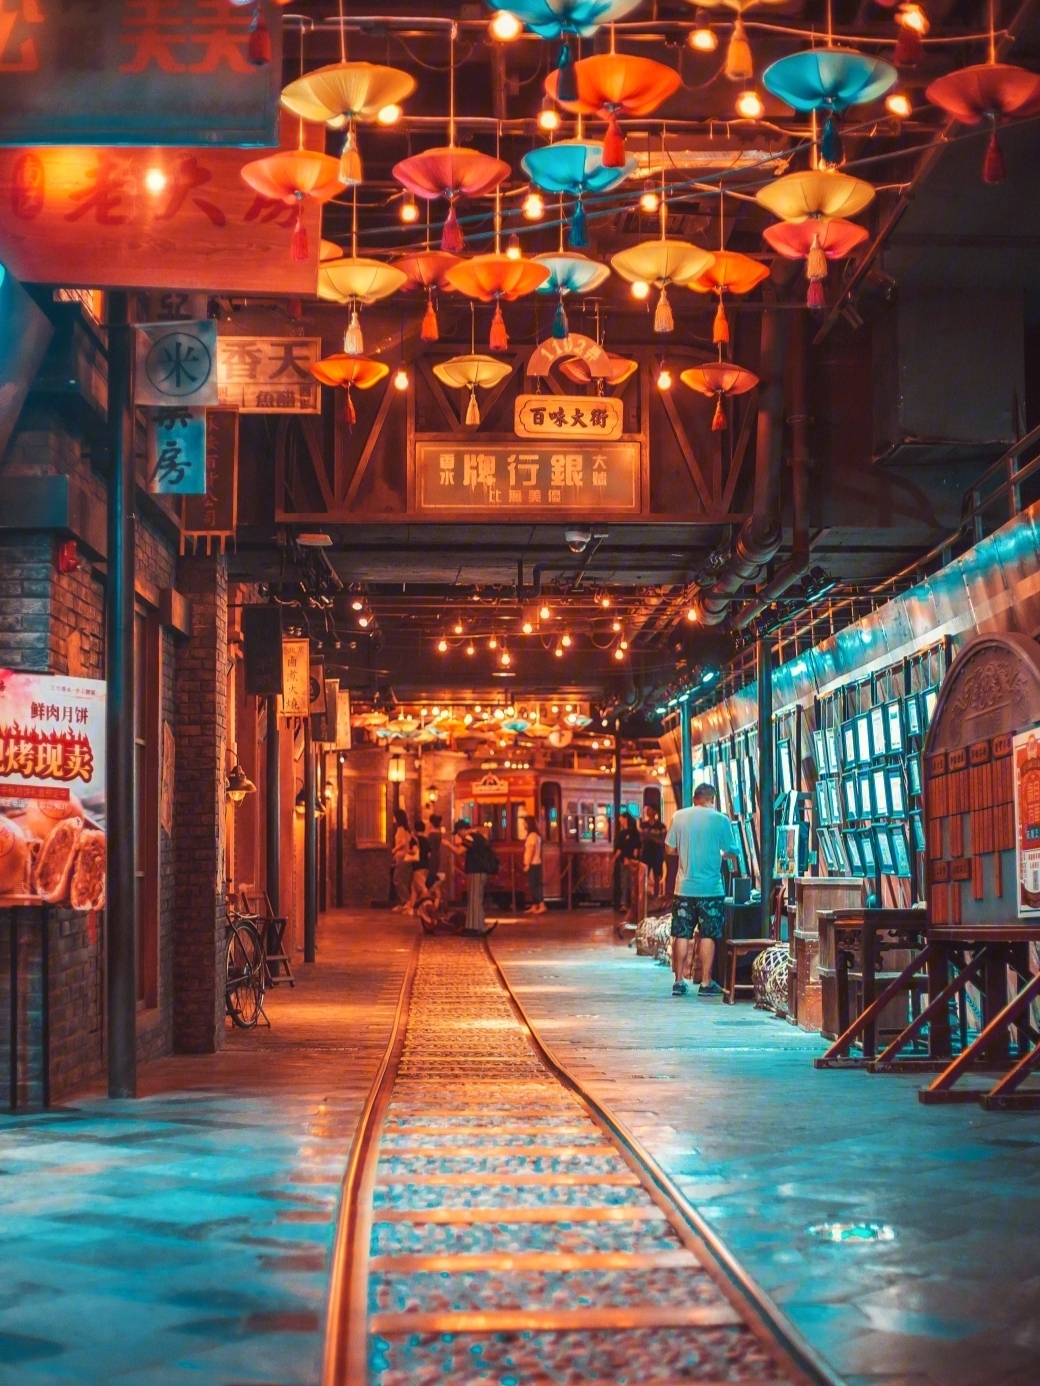 弄老上海风情街一个在地下的老上海格调的风情街,整体风格复古怀旧,不